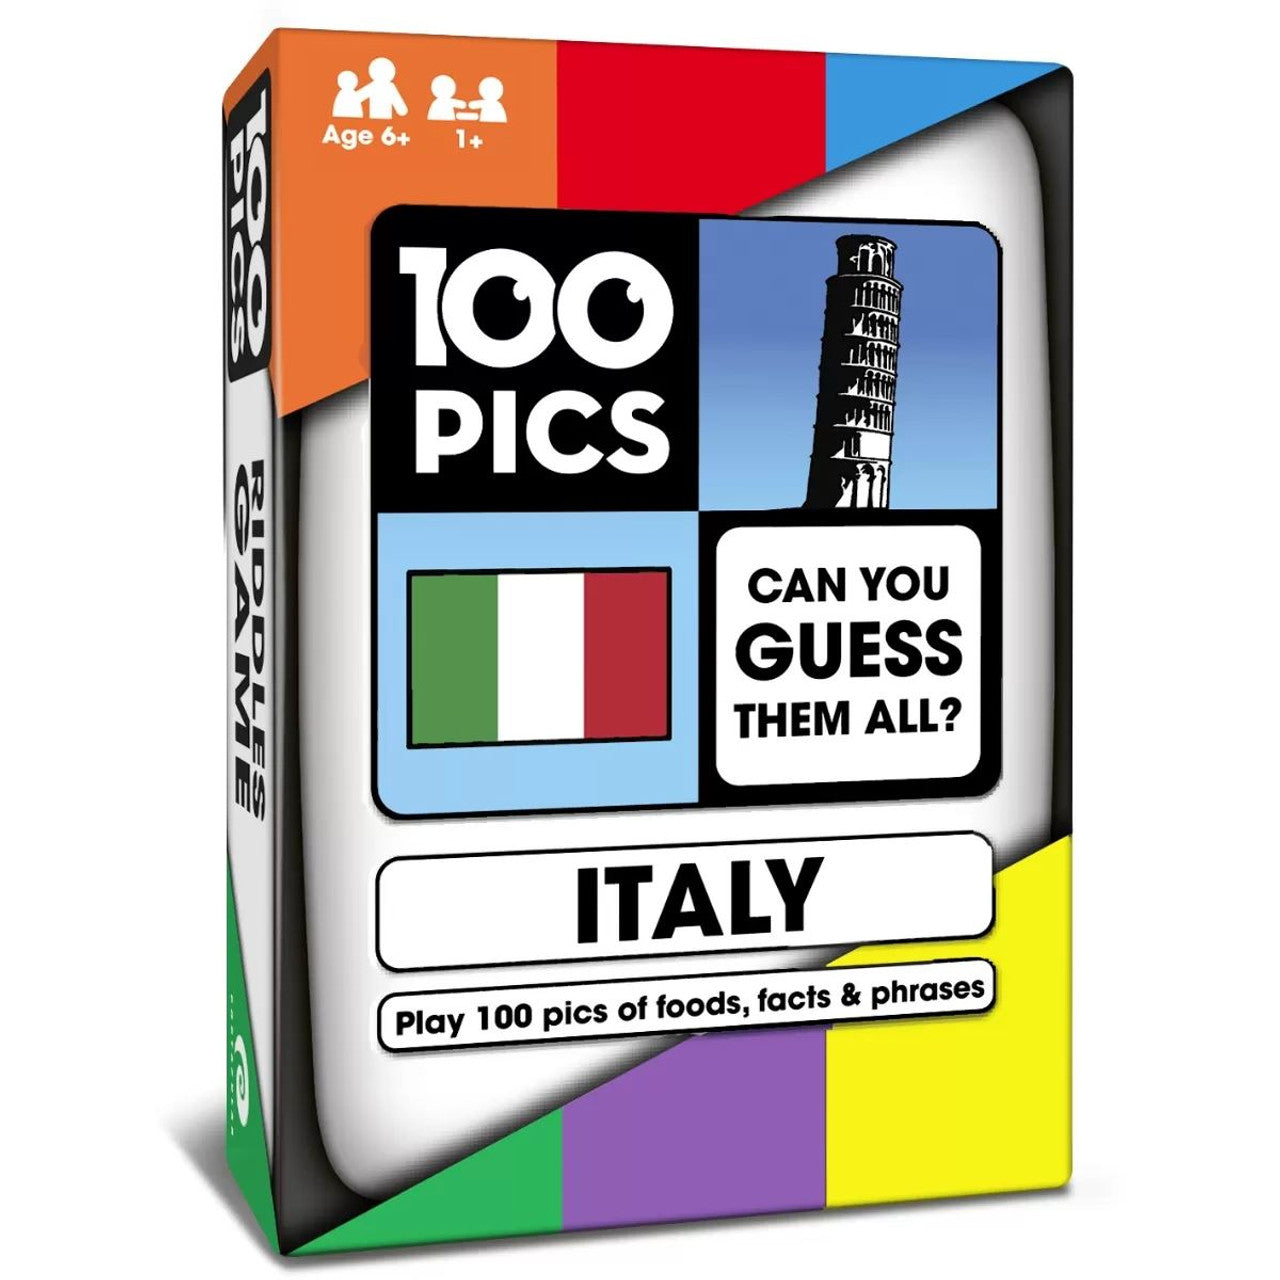 100 Pics: Italy